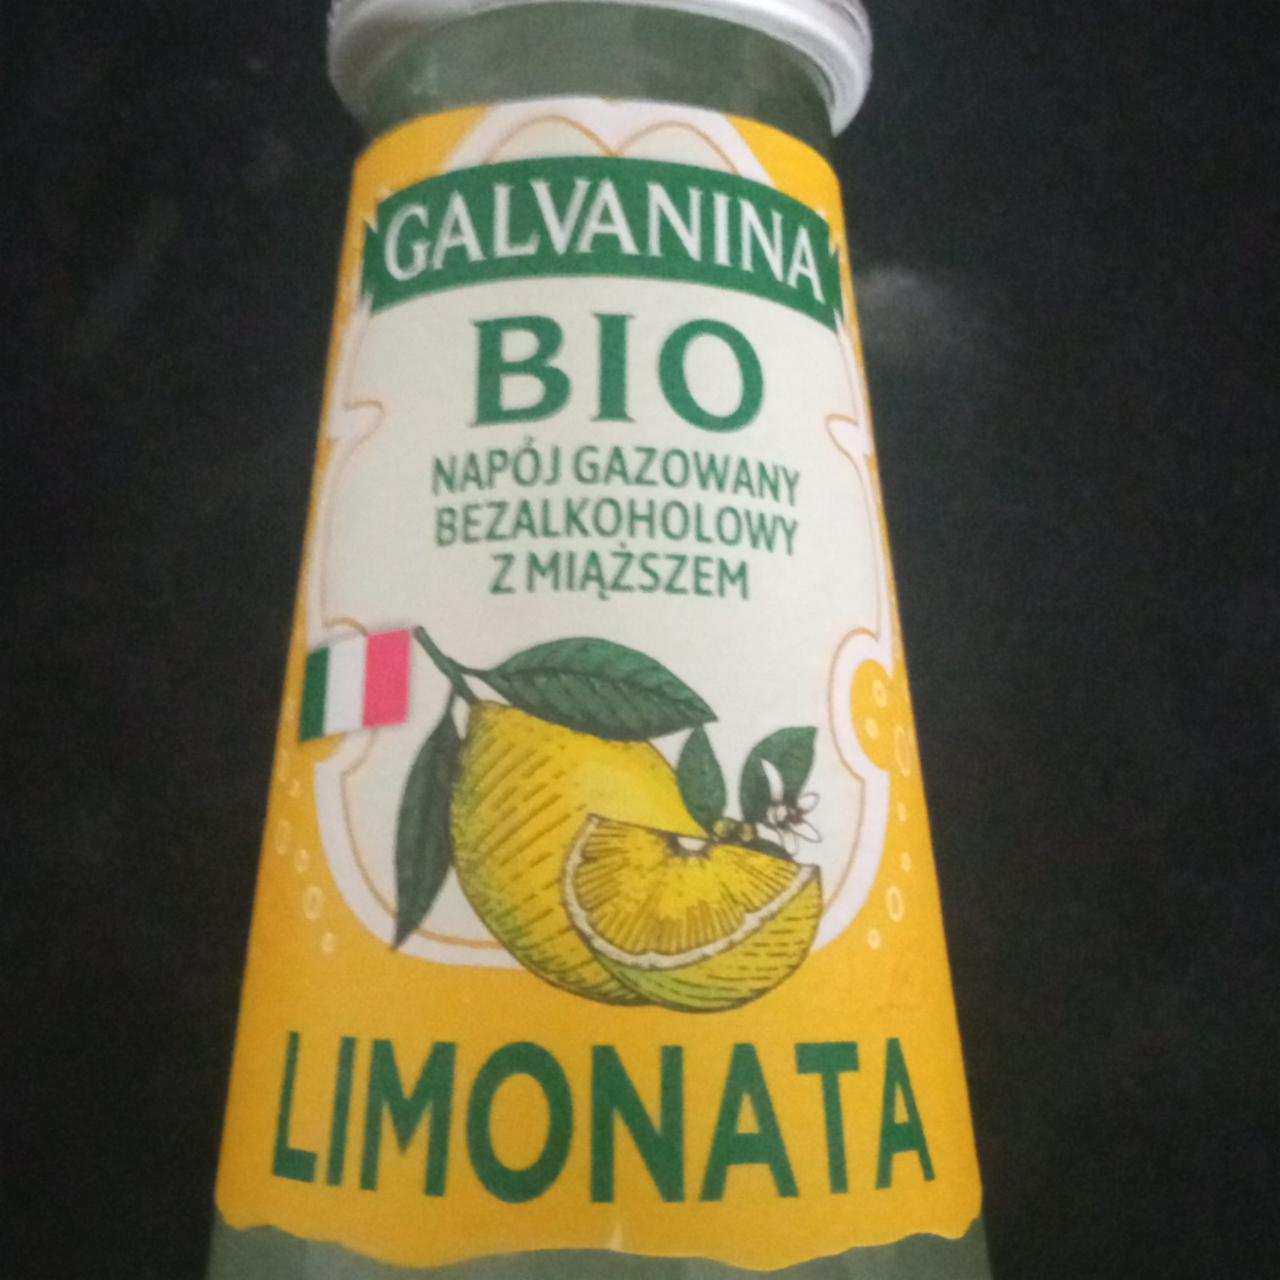 Zdjęcia - Bio napój gazowany bezalkoholowy z miąższem Limonata Galvanina